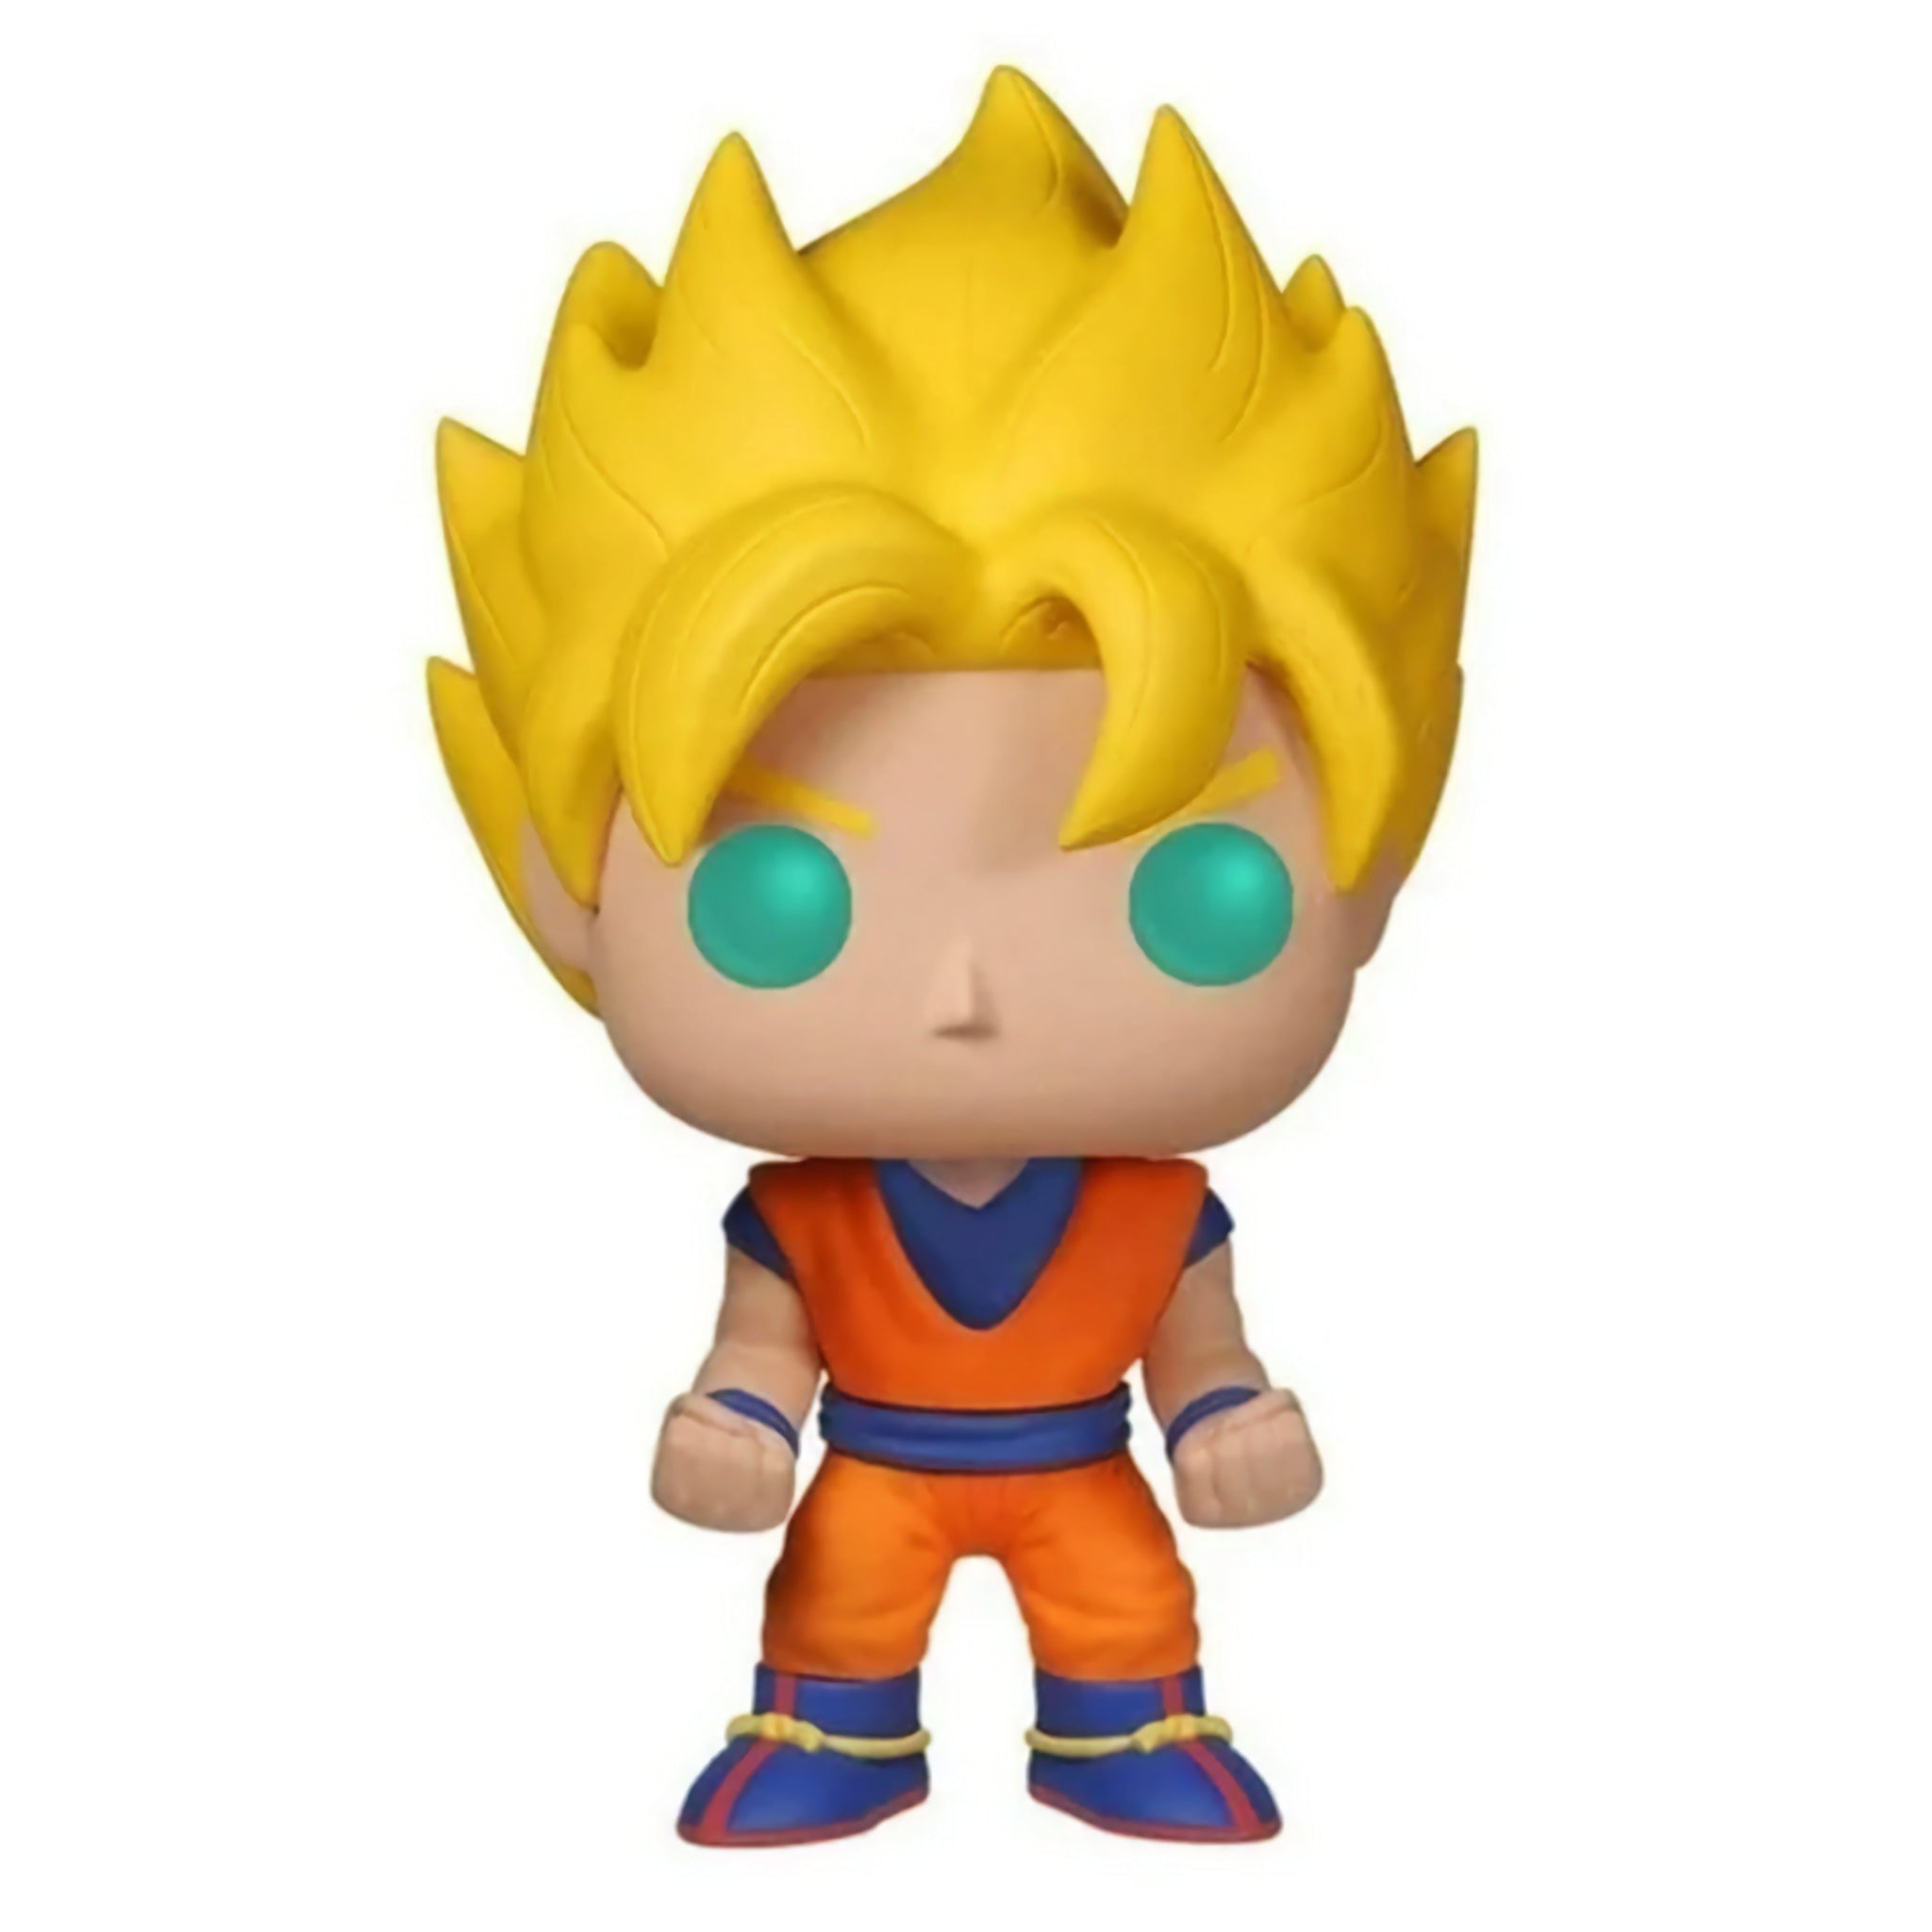 Super Saiyan Goku Funko Pop!